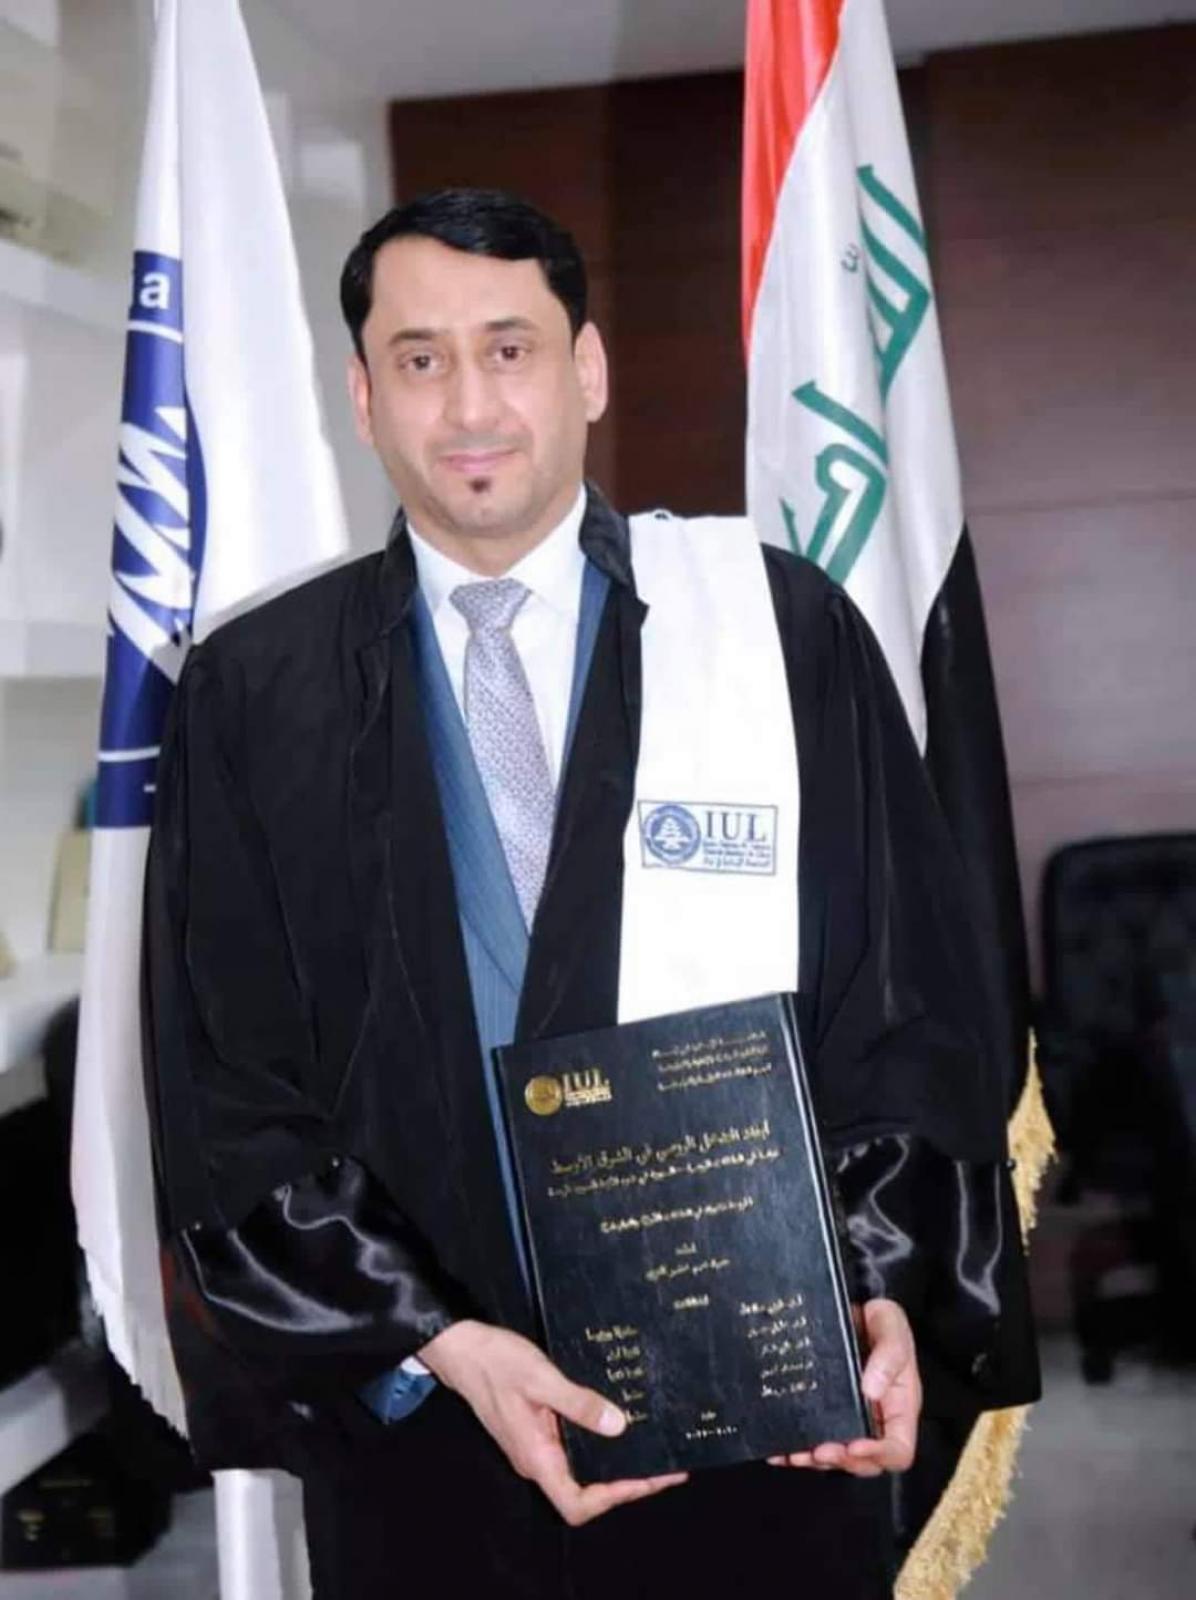 الأمين العام لمجلس الوزراء حميد الغزي خلال نيله الدكتوراه من الجامعة الإسلامية في لبنان (أرشيف)